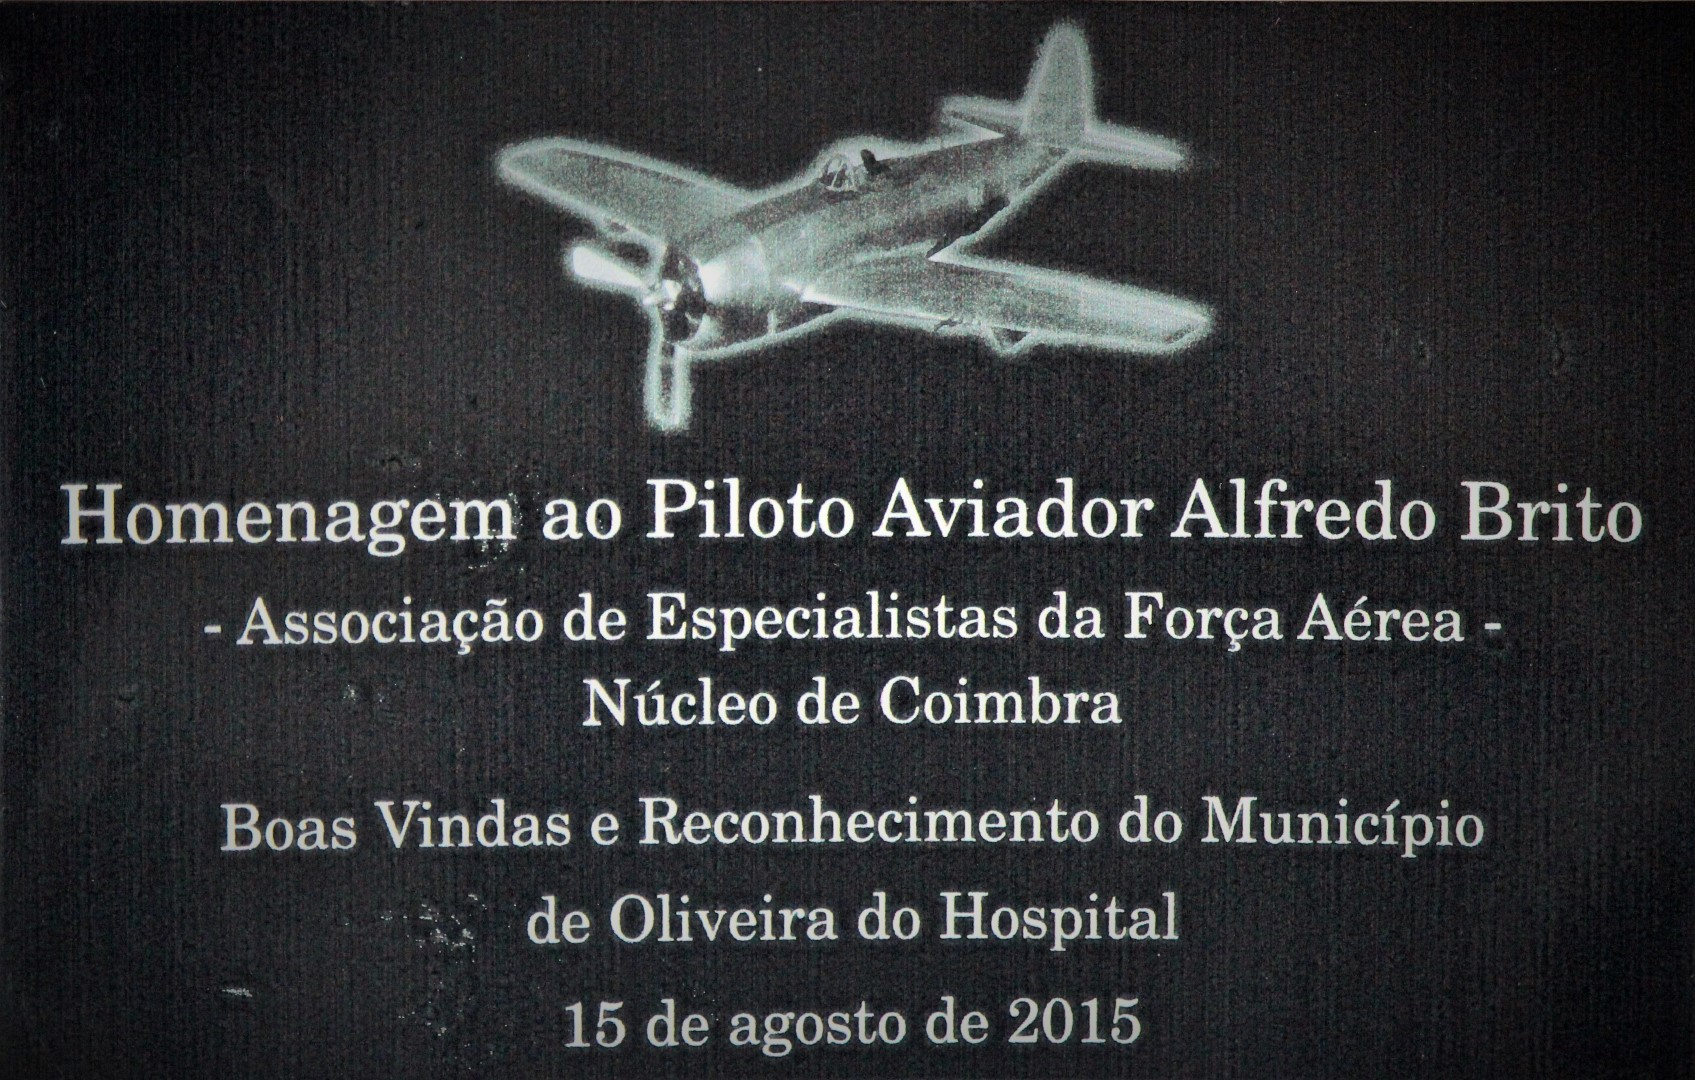 Homenagem ao Piloto Aviador Alfredo Brito